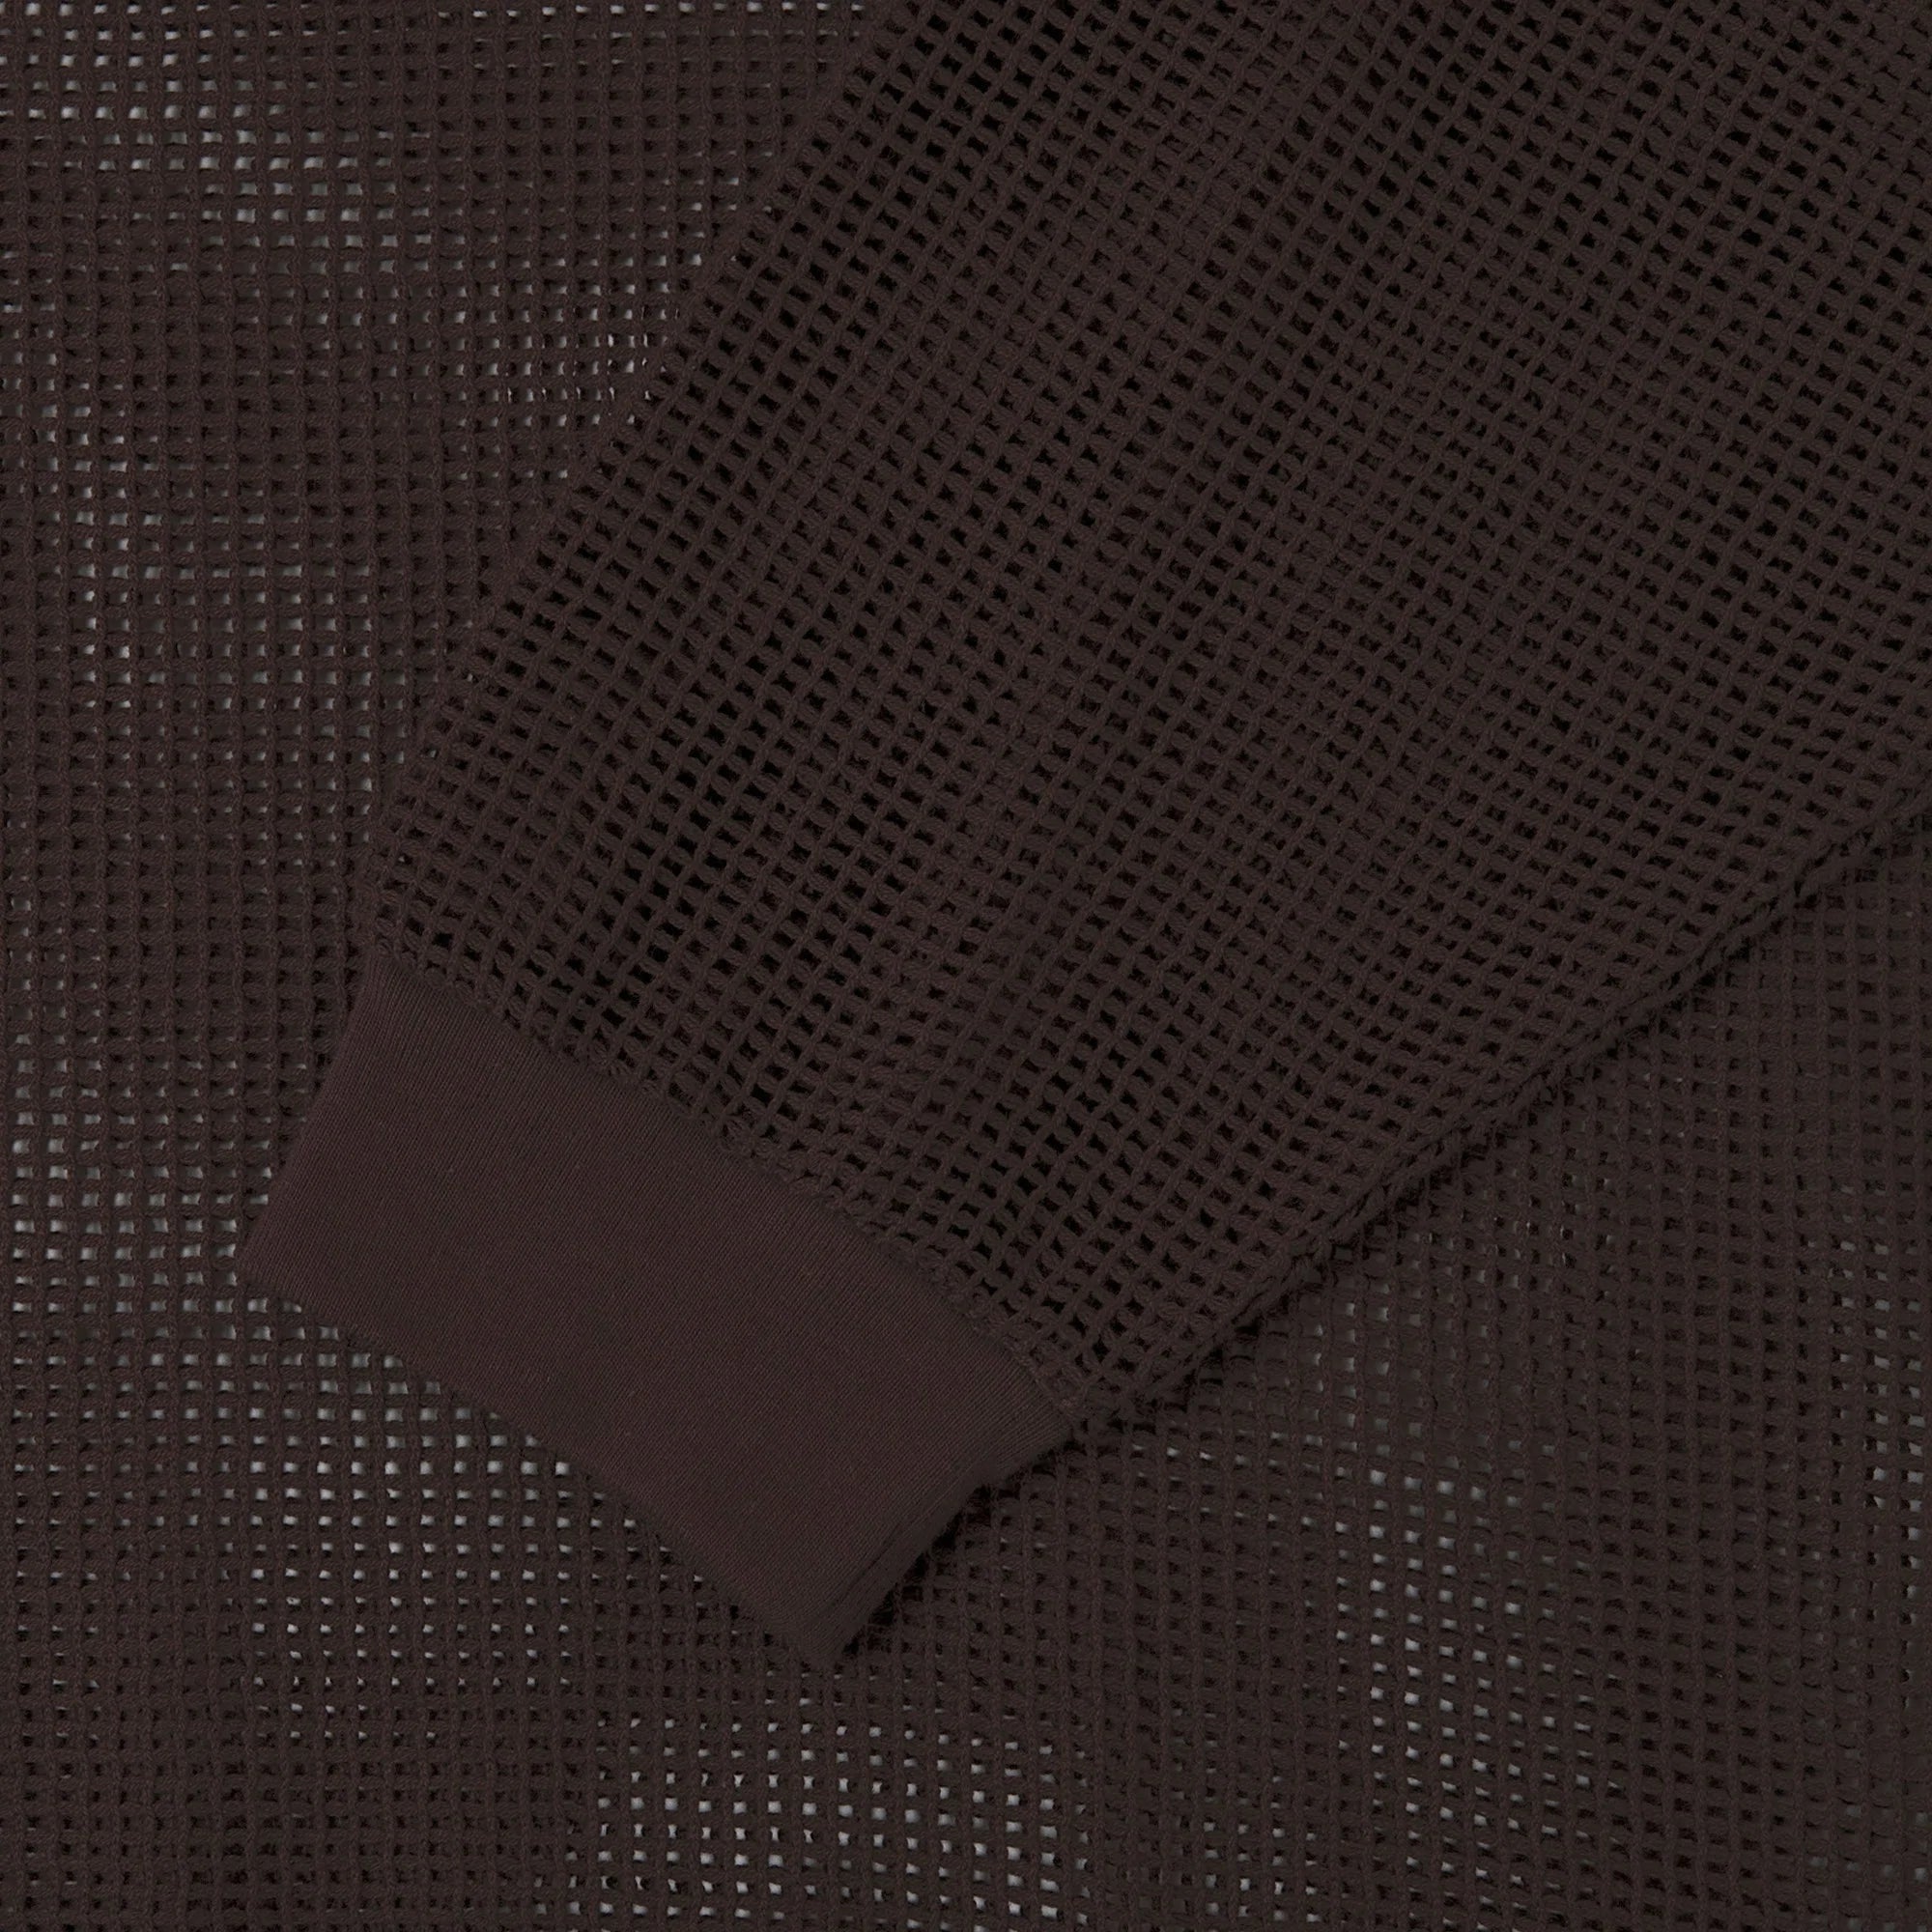 Cotton Net Fabric 48